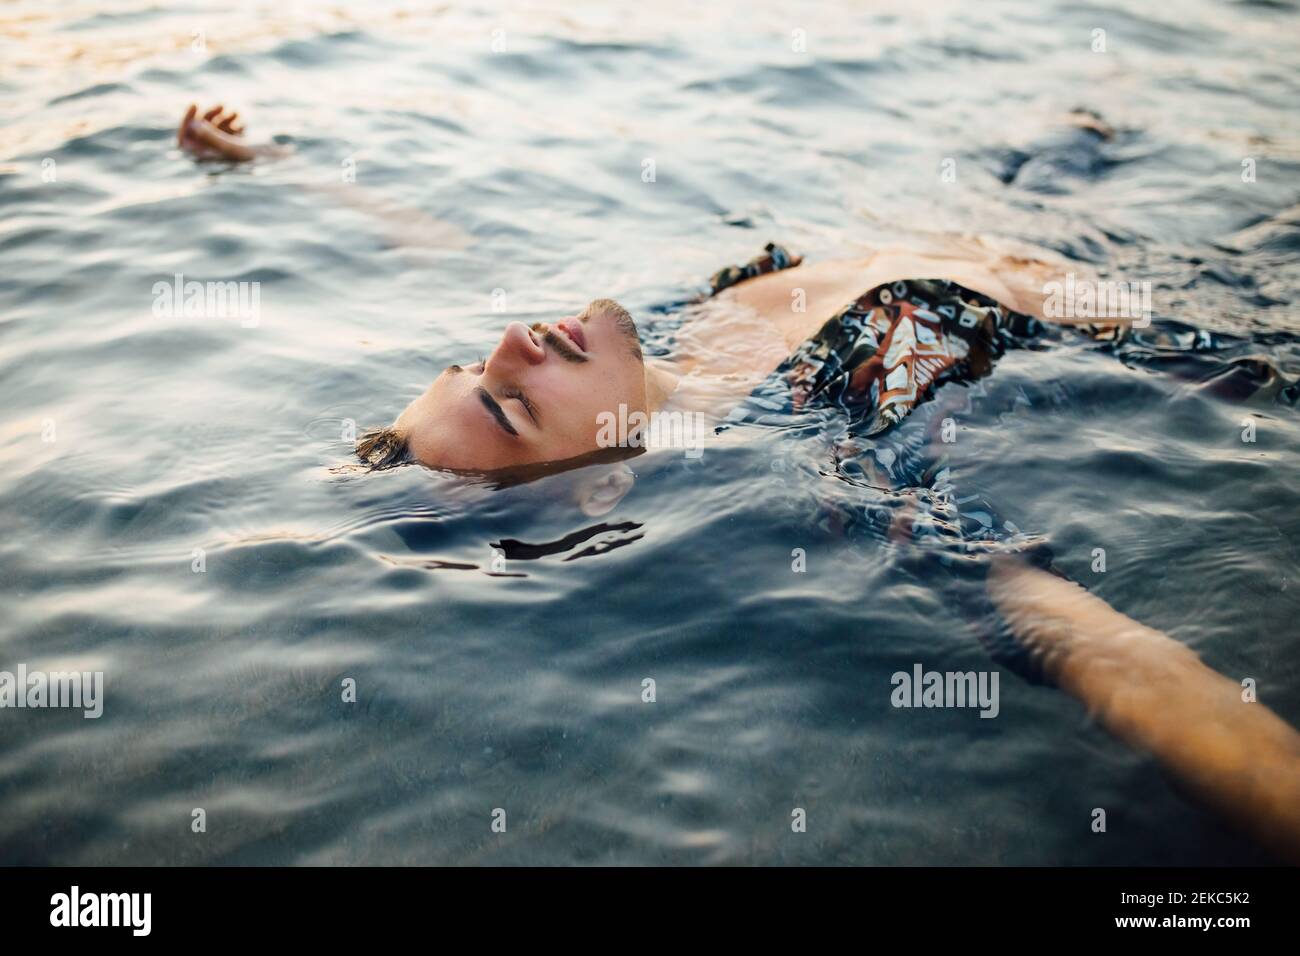 Giovane uomo con gli occhi chiusi indossando una camicia senza bottoni mentre galleggia in acqua Foto Stock